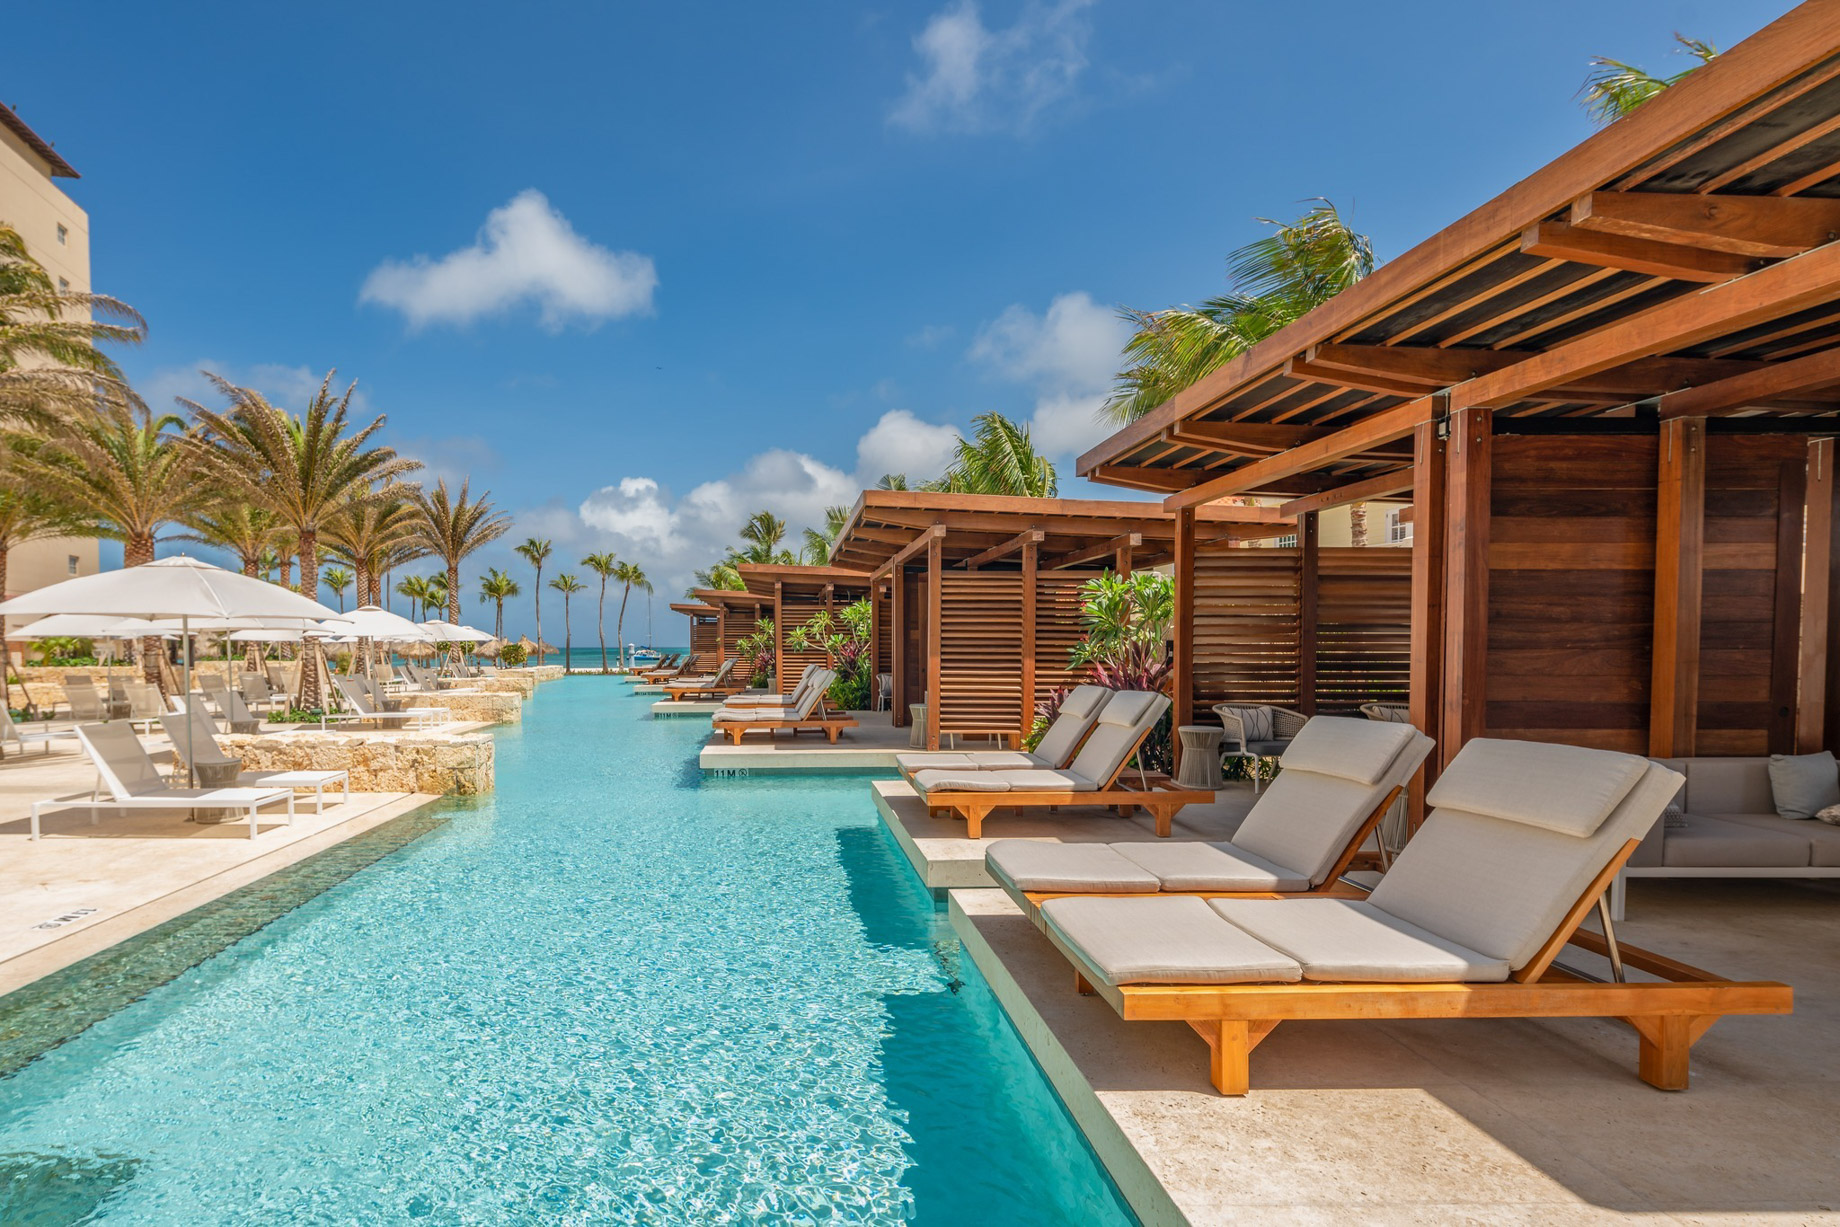 Hyatt Regency Aruba Resort & Casino – Noord, Aruba – Pool Deck Cabanas